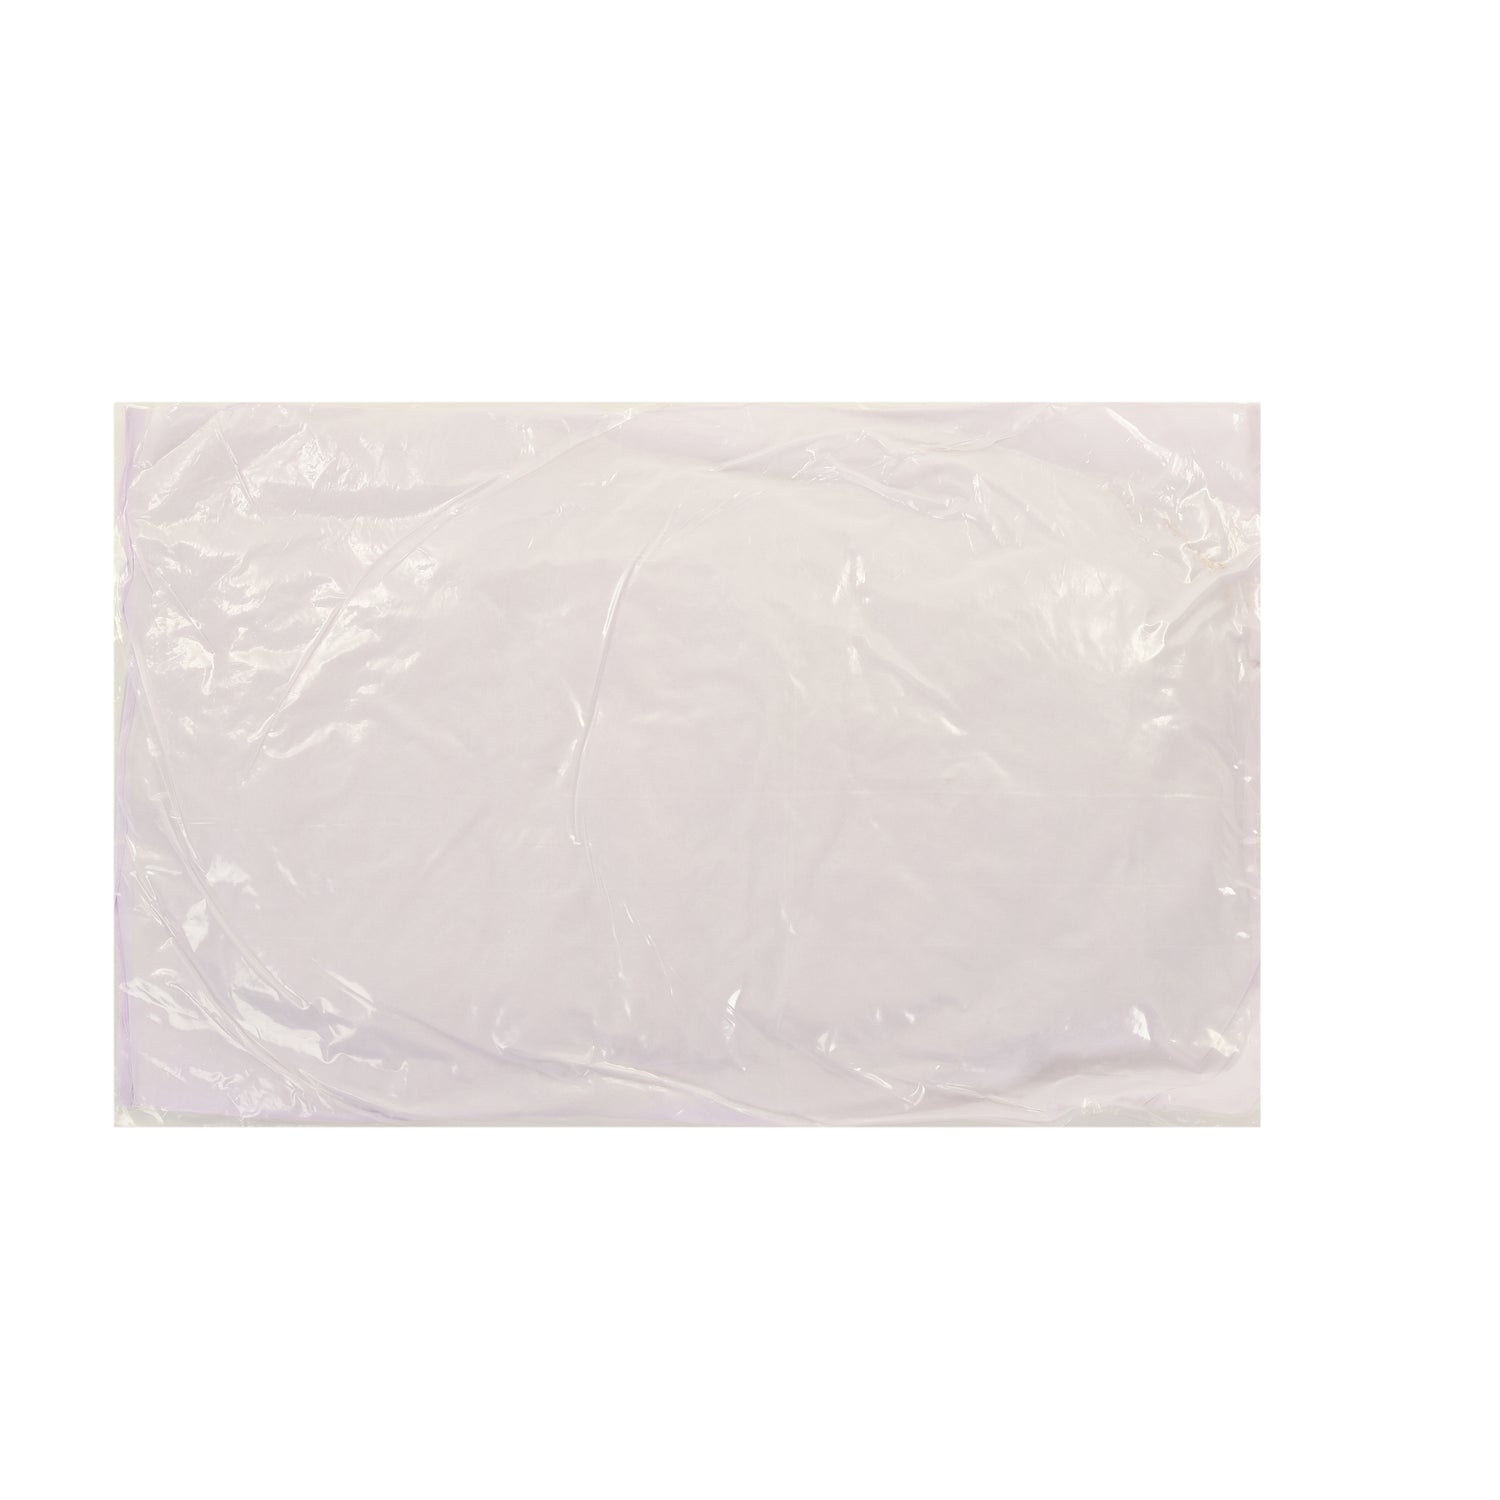 Microfiber Sleeping Pillow - White